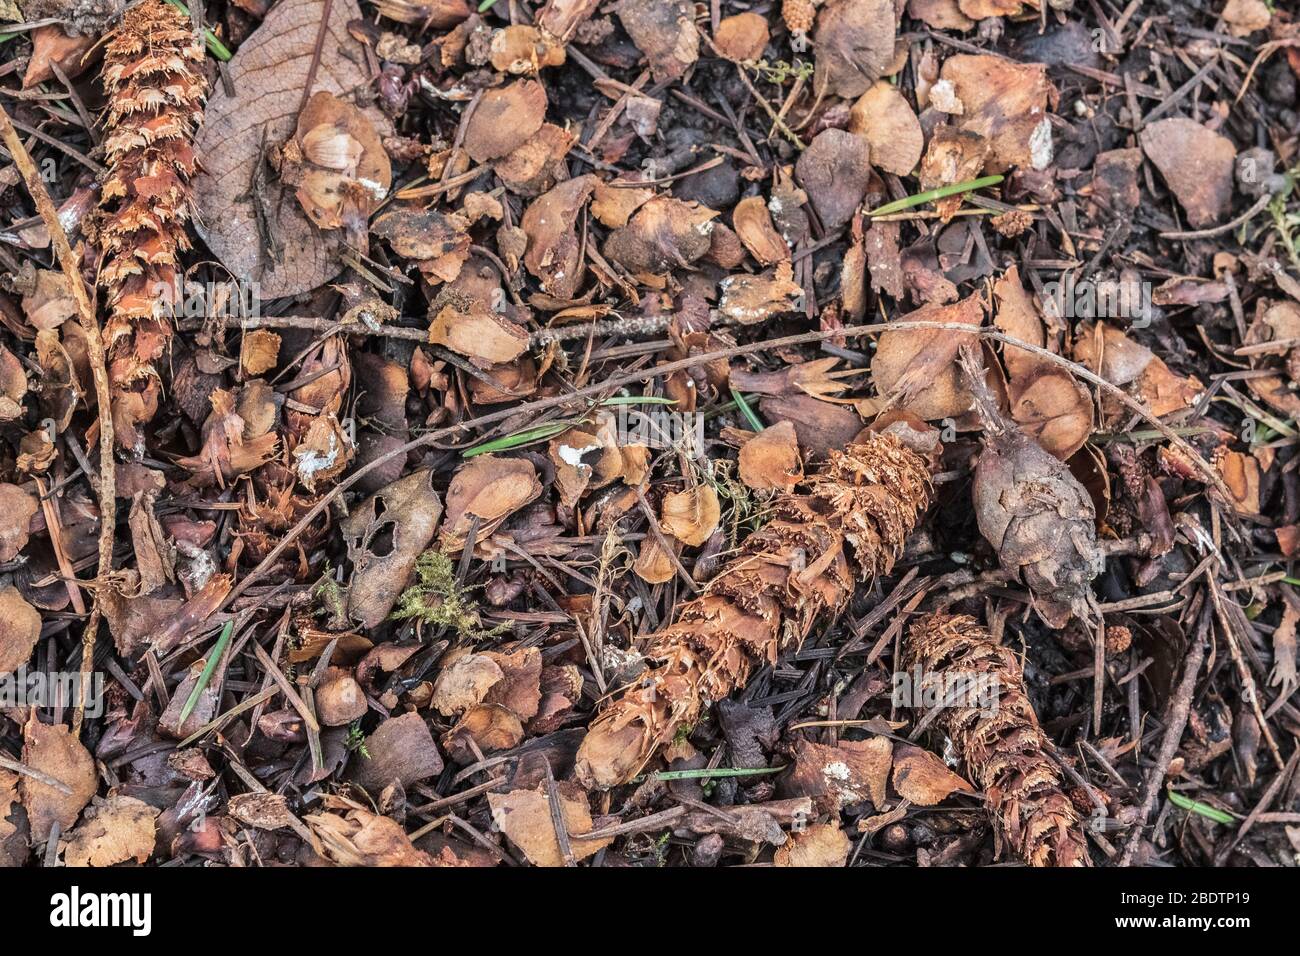 Ausrangierte Samenmäntel und halbgefressene Douglasie-Tannenzapfen, die von einem Roten Eichhörnchen hinterlassen wurden, liegen in einem verworrenen Midden auf dem Waldboden. Stockfoto